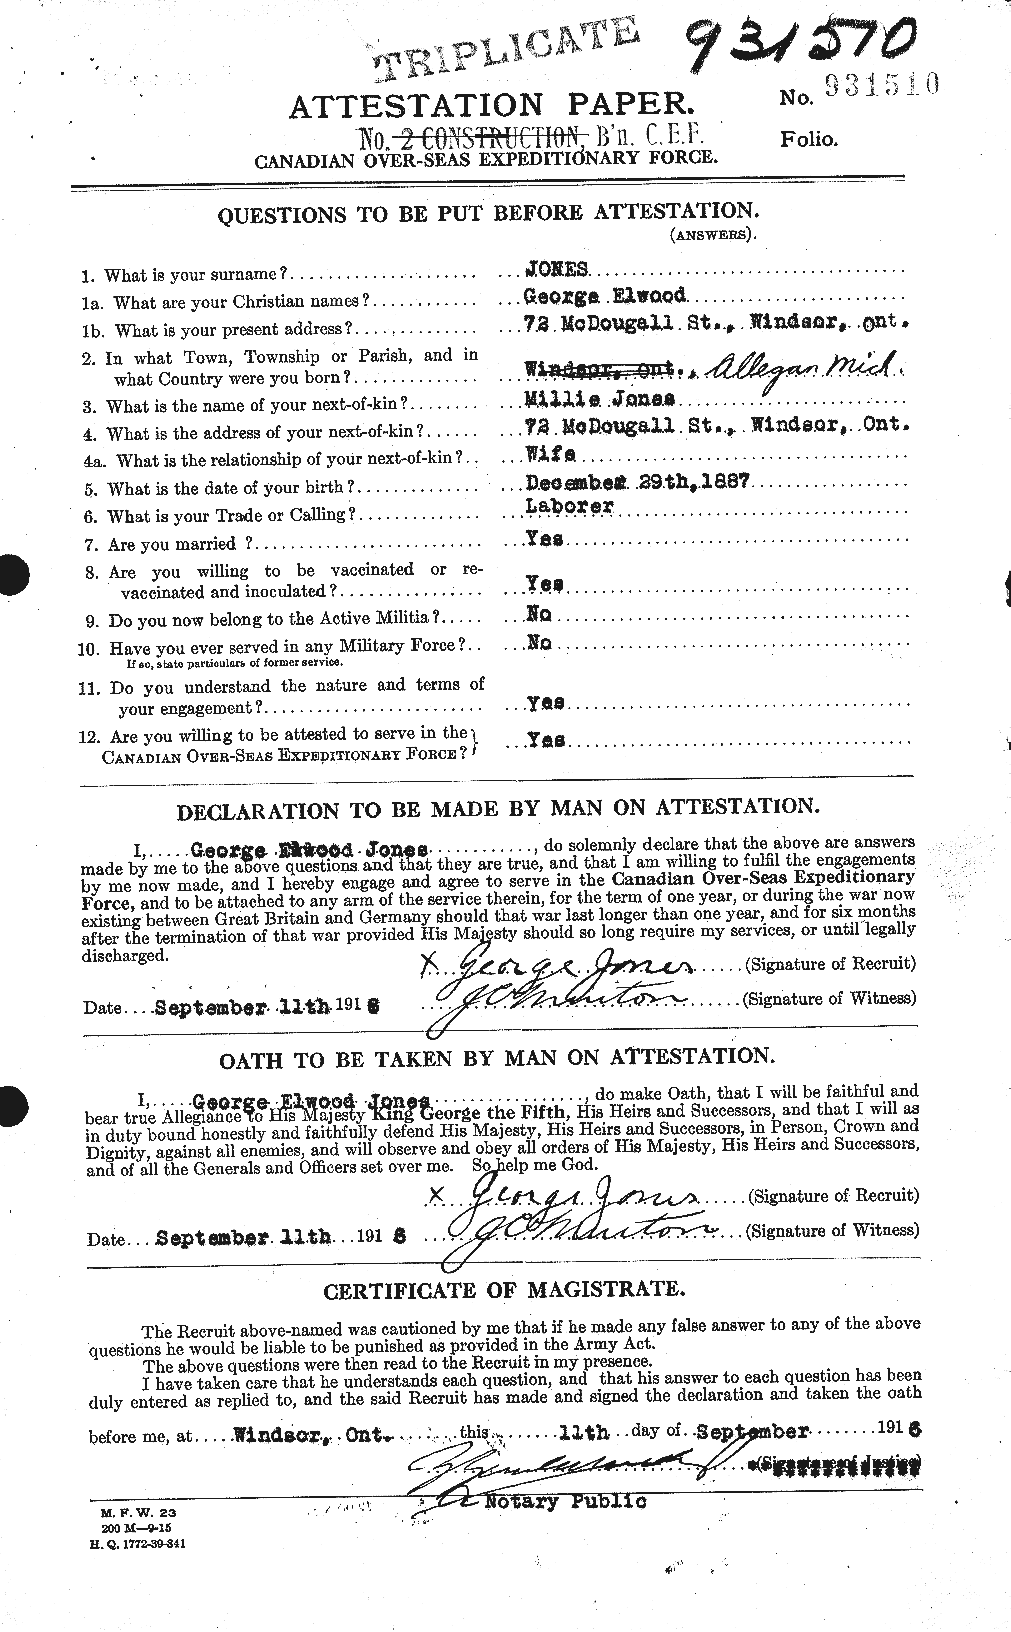 Dossiers du Personnel de la Première Guerre mondiale - CEC 425234a